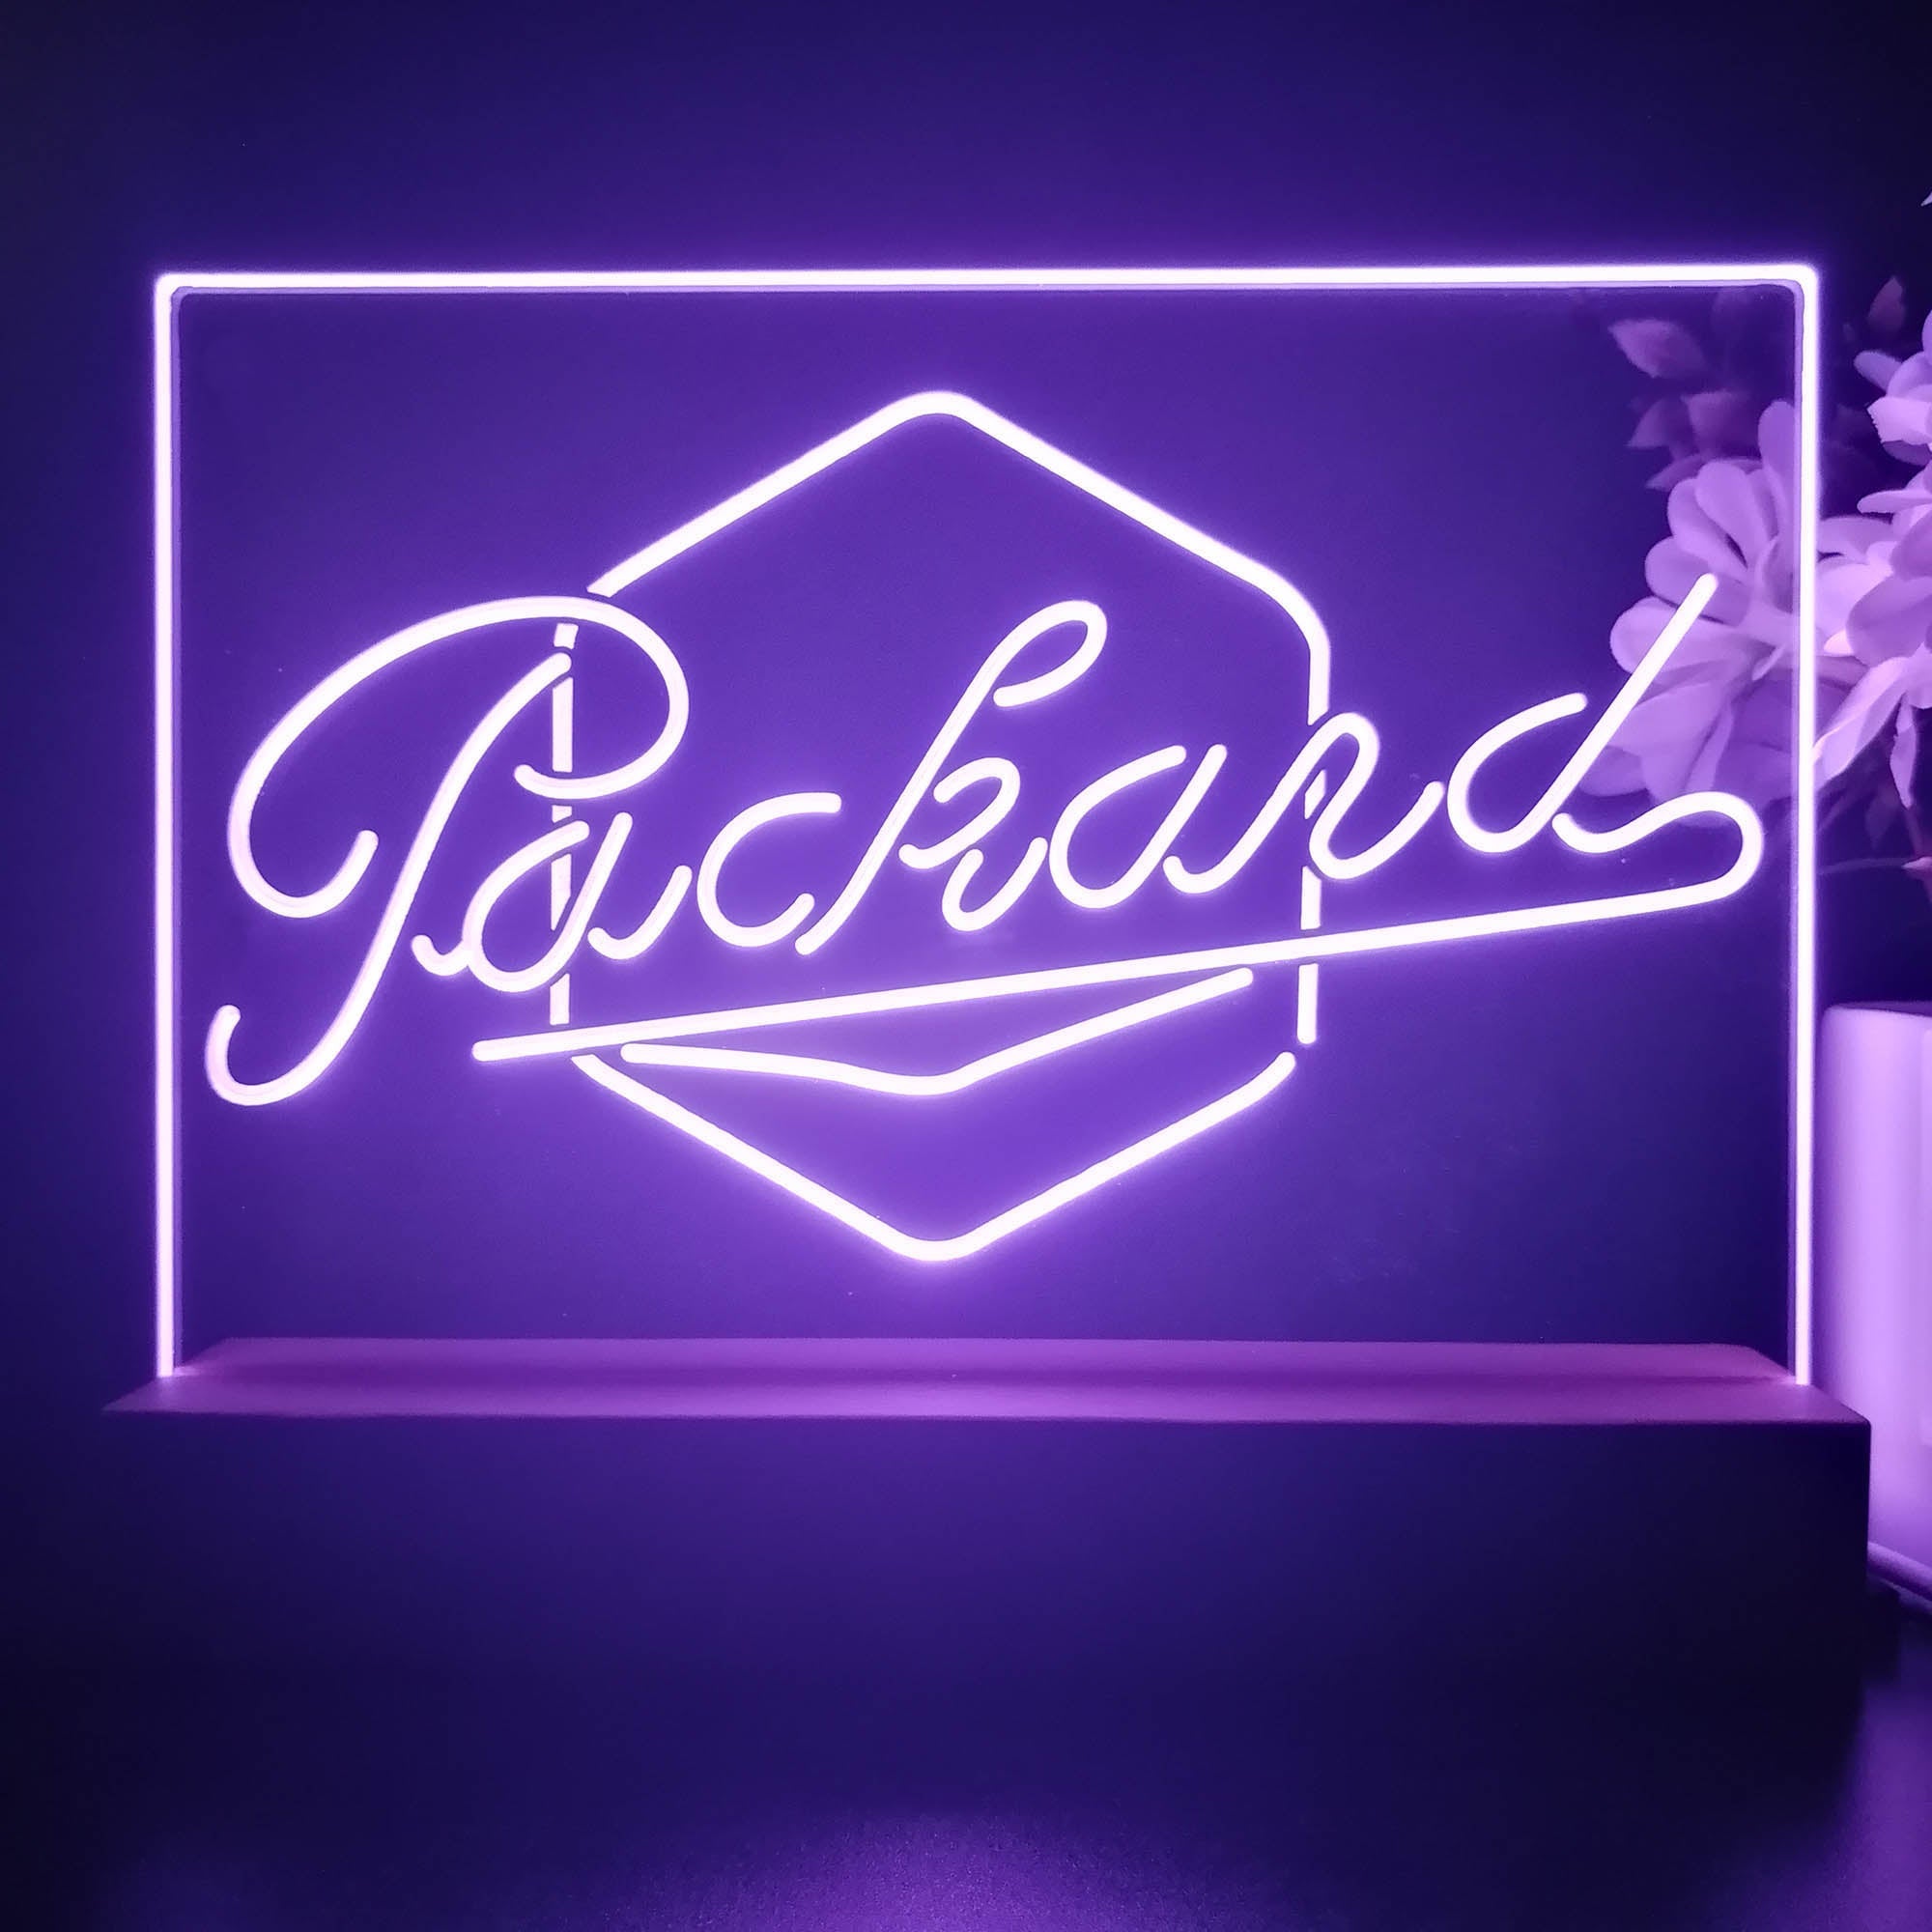 Packard Auto 3D Illusion Night Light Desk Lamp